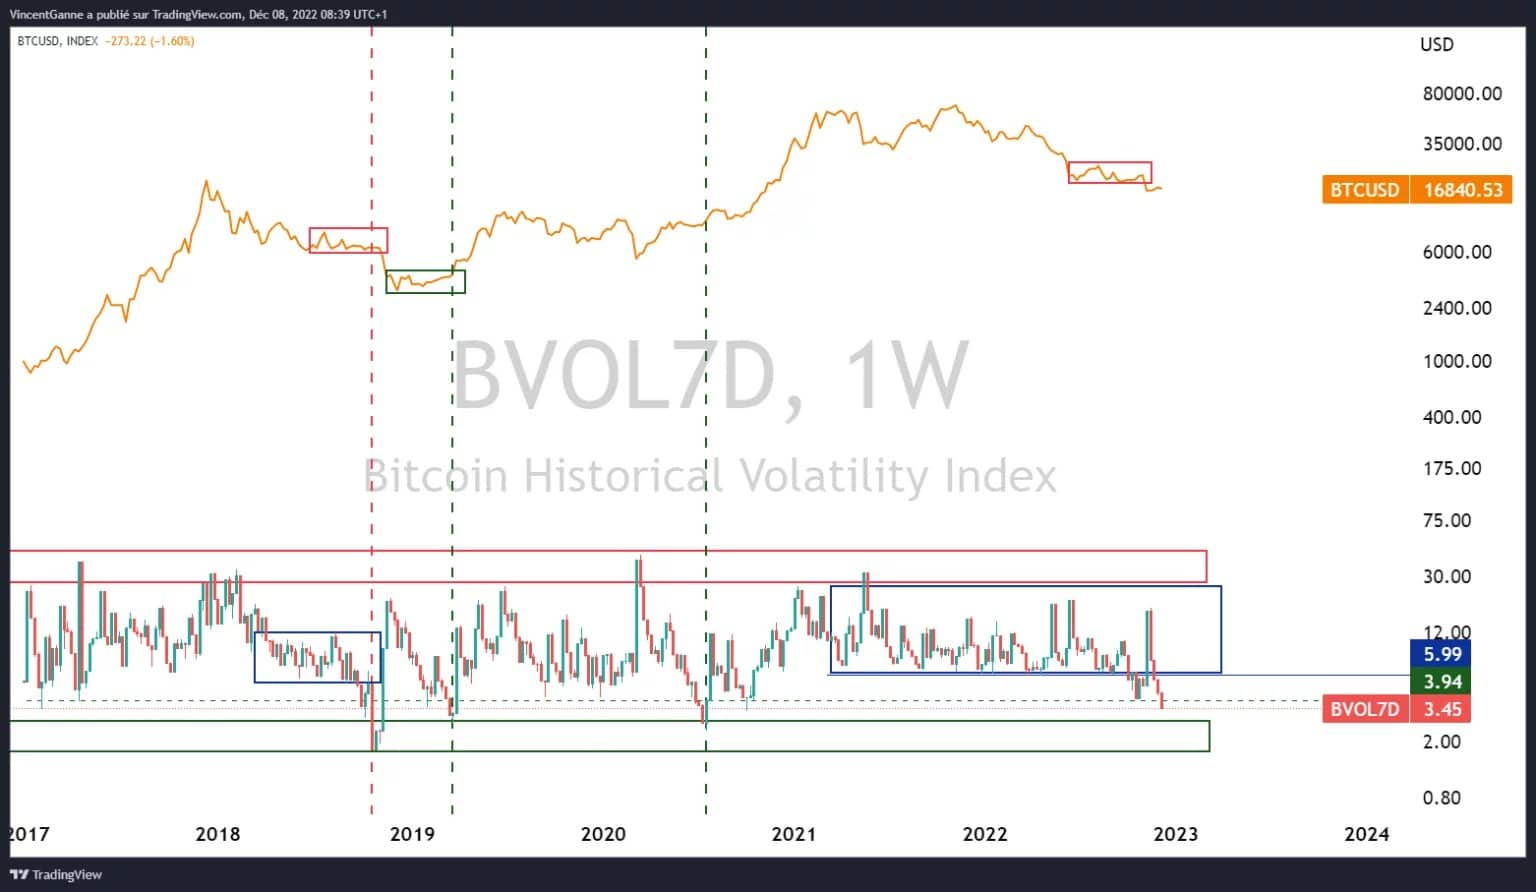 Figura 2: Volatilidade histórica de 7 dias em dados de preços semanais de Bitcoin